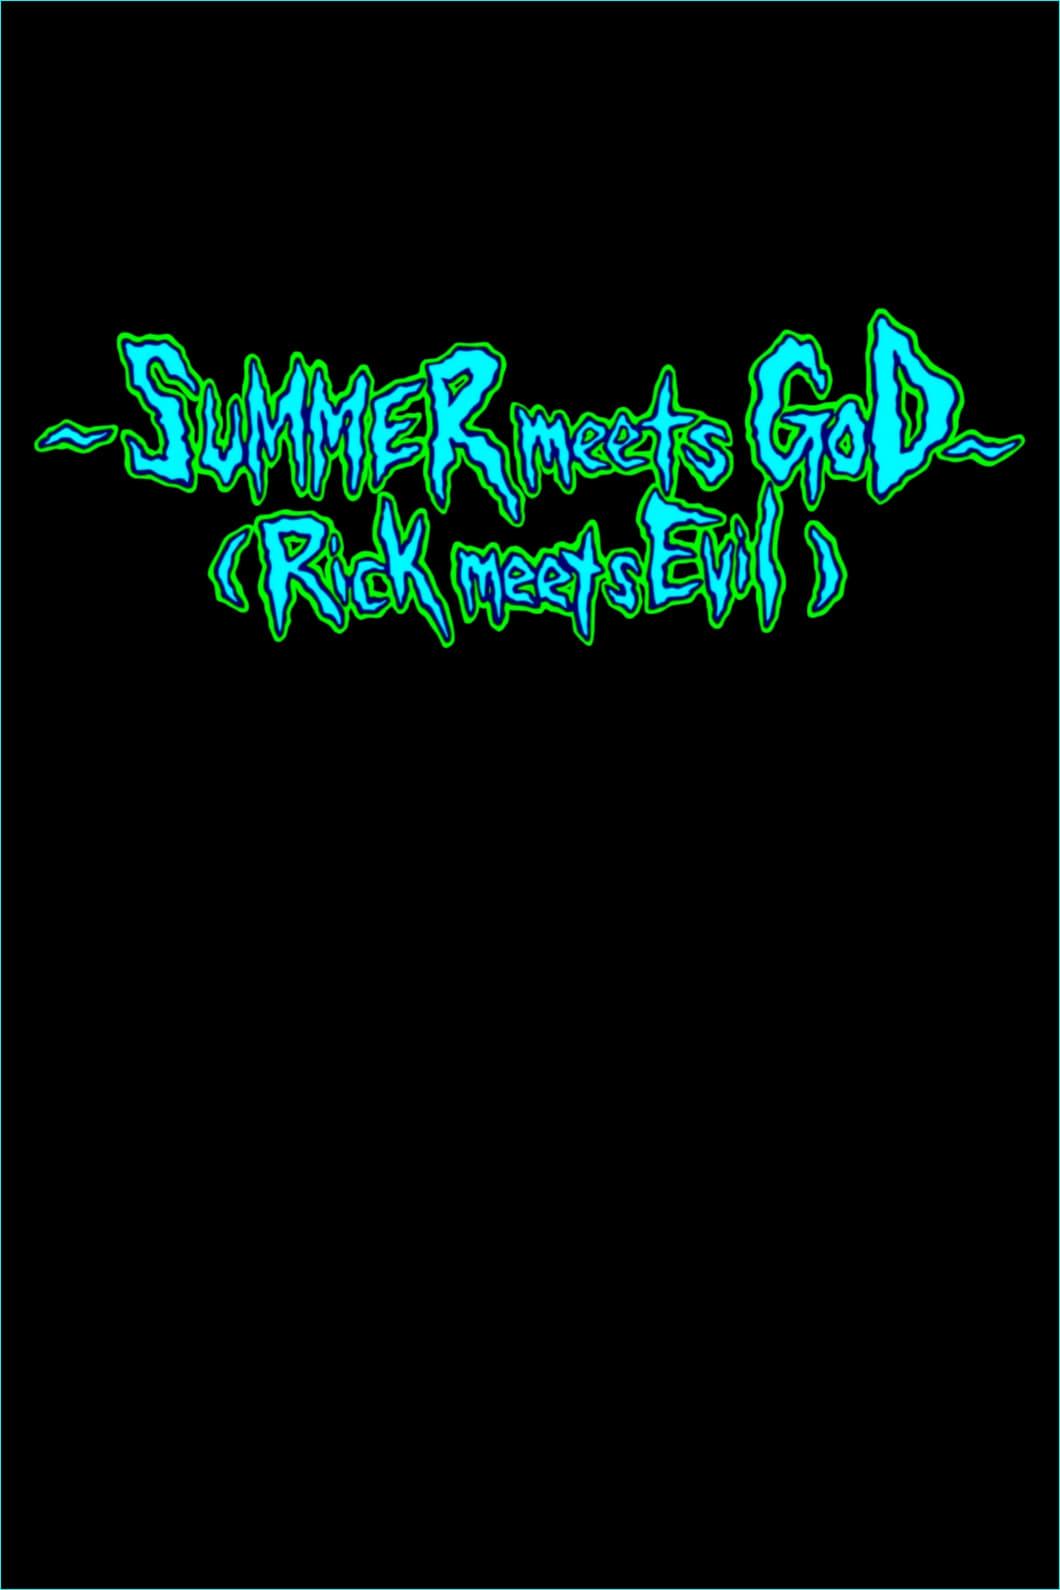 Rick and Morty: Summer Meets God (Rick Meets Evil) poster